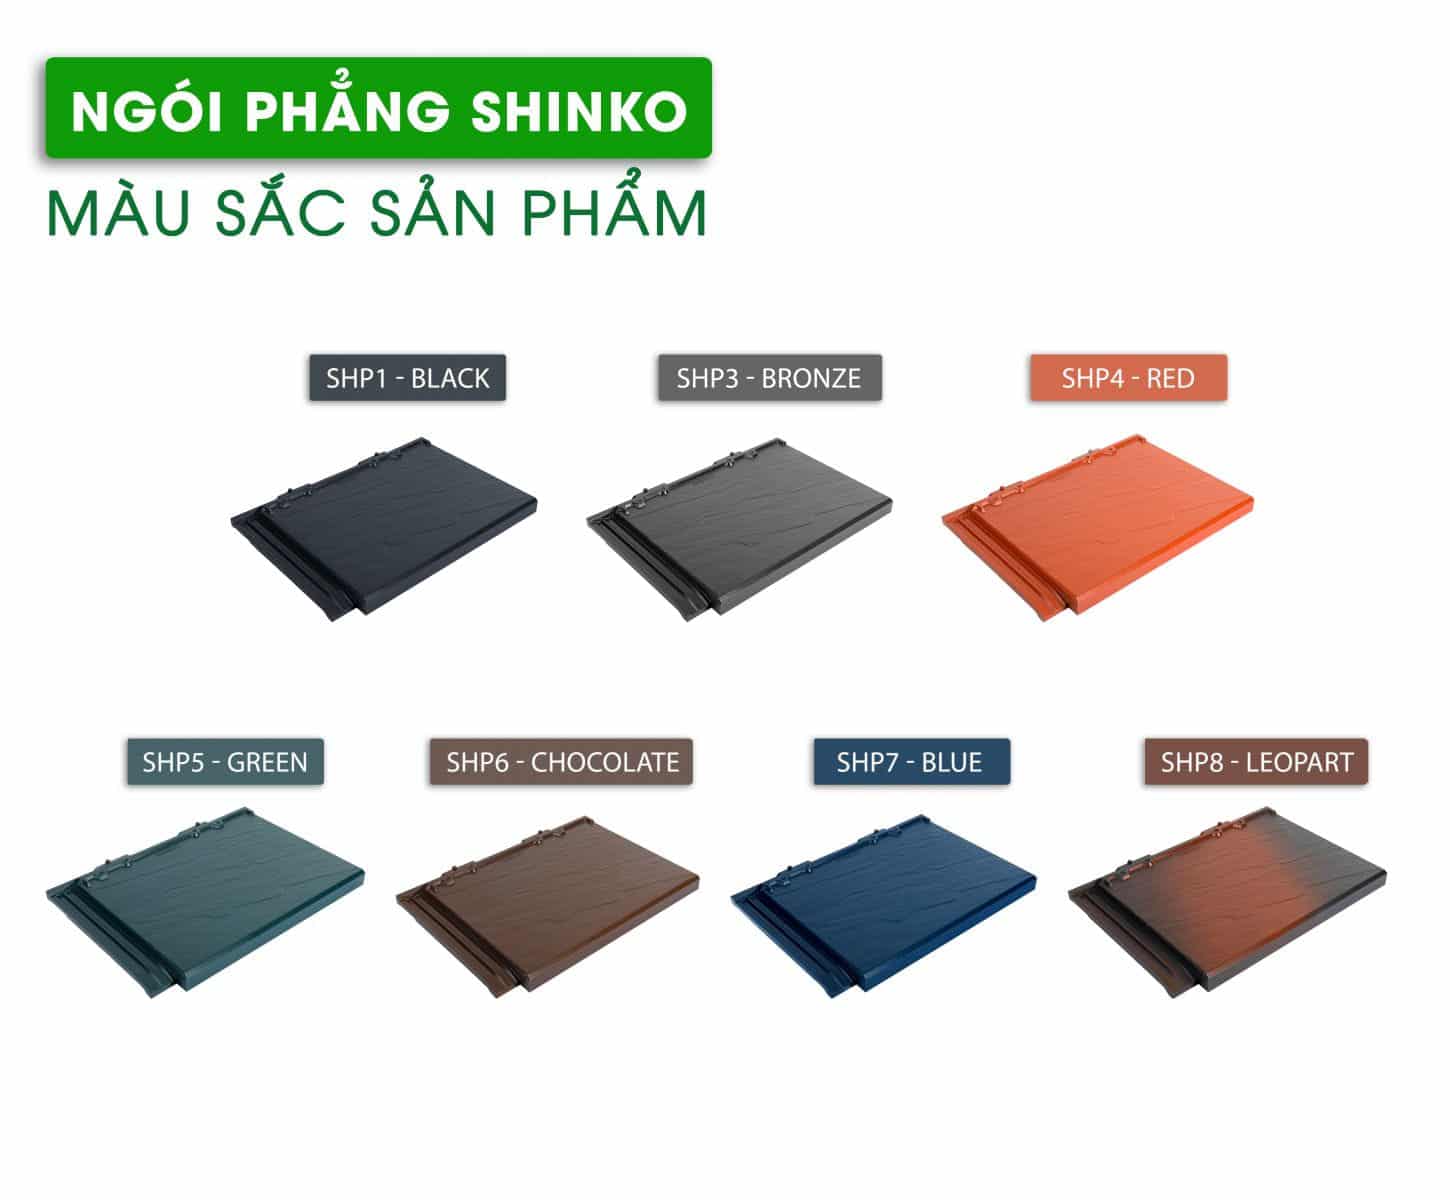 Ngói phẳng shinko mang đến một bảng màu sắc đa dạng